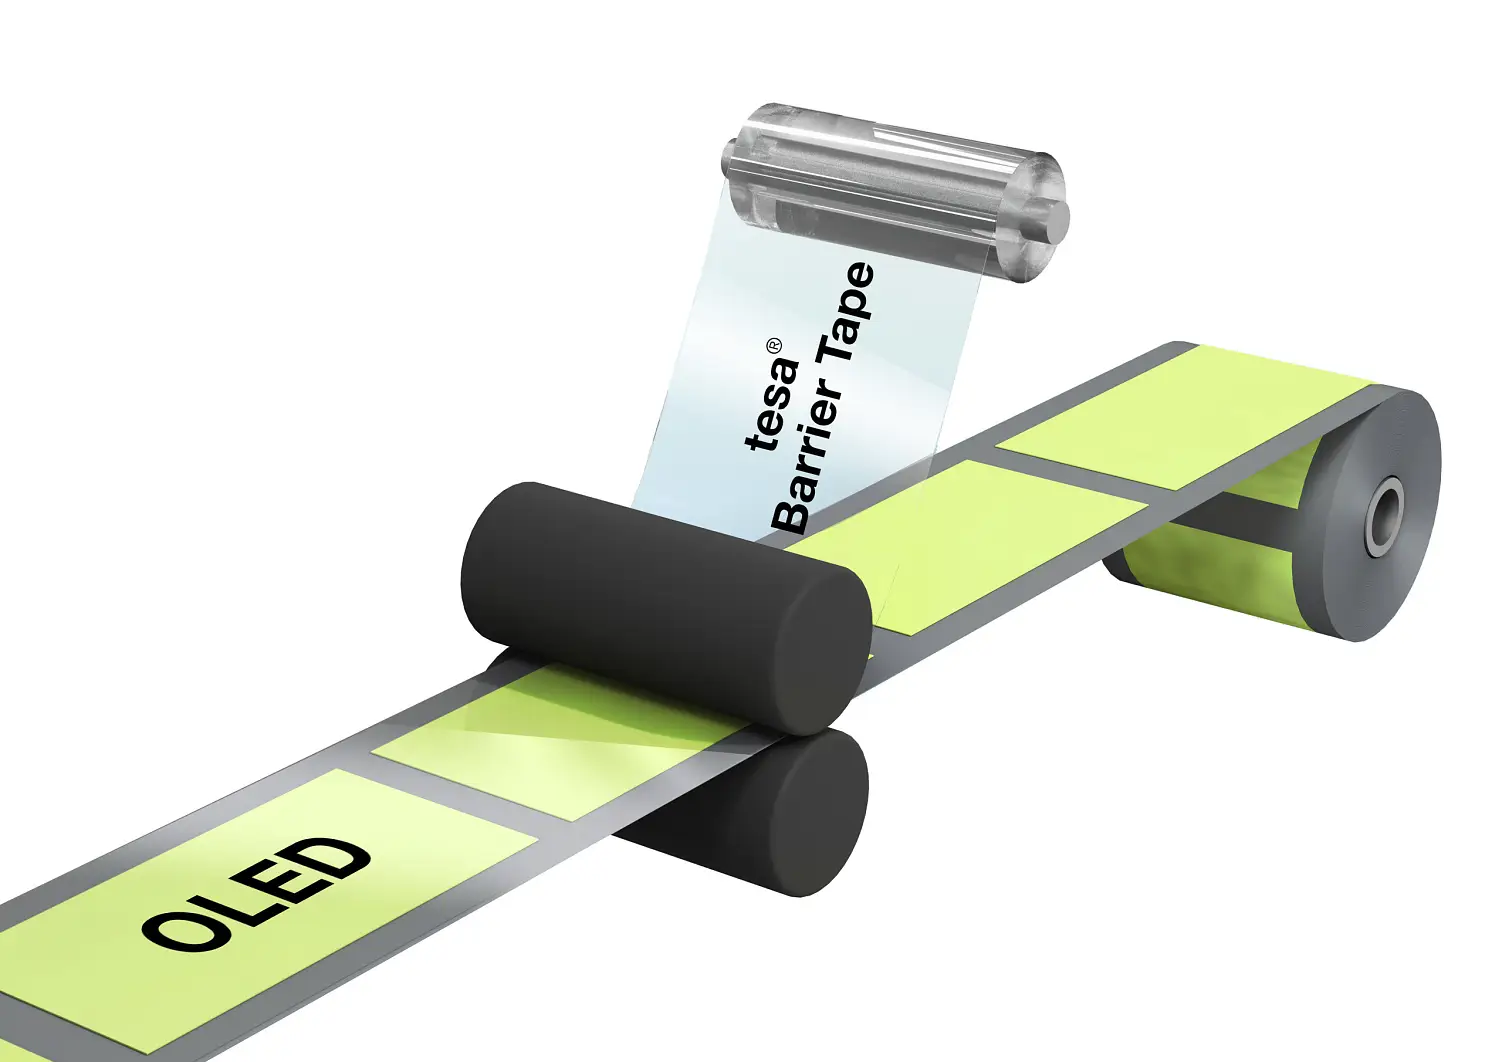 Nové průhledné ochranné pásky vybavené patentovanou technologií krycí vrstvy tesa DrySeal® Liner mohou být spolehlivě a rychle použity ve výrobním procesu R2R (roll-to-roll). Tato metoda zapouzdřování celého povrchu OLED šetří čas a peníze.